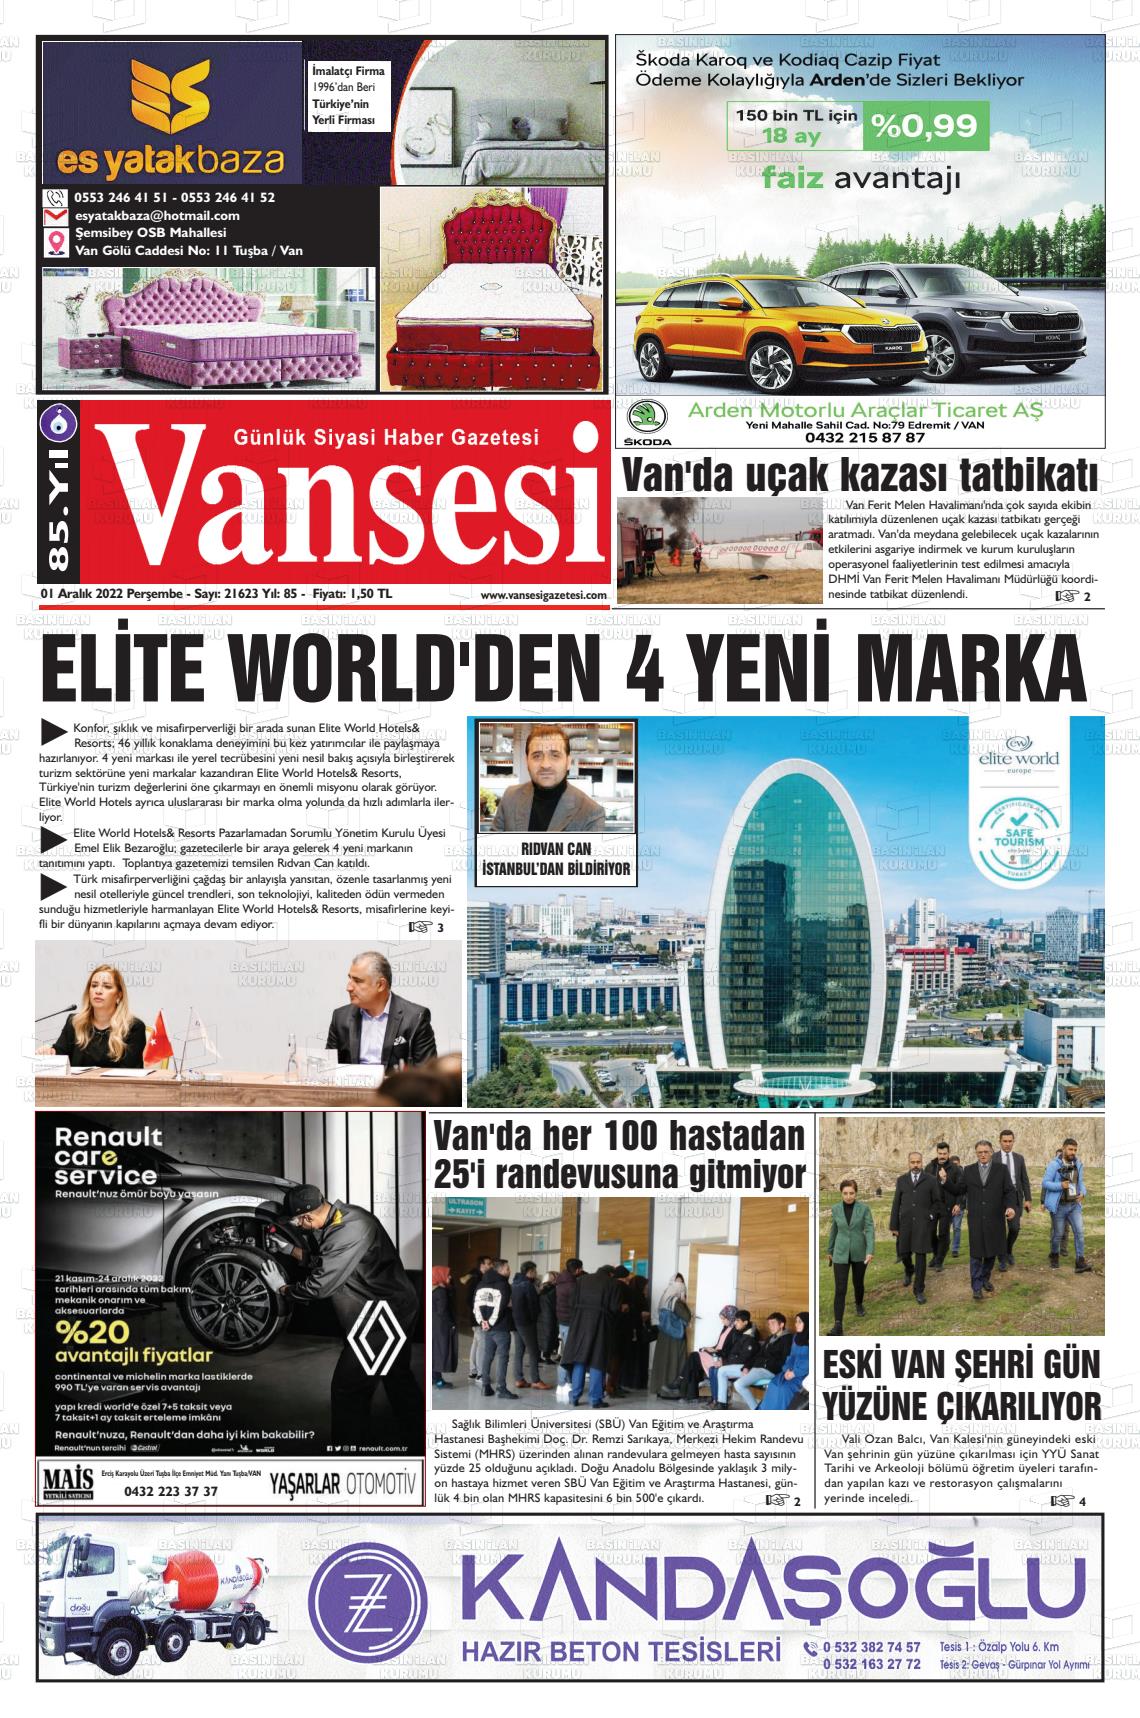 01 Aralık 2022 Vansesi Gazete Manşeti